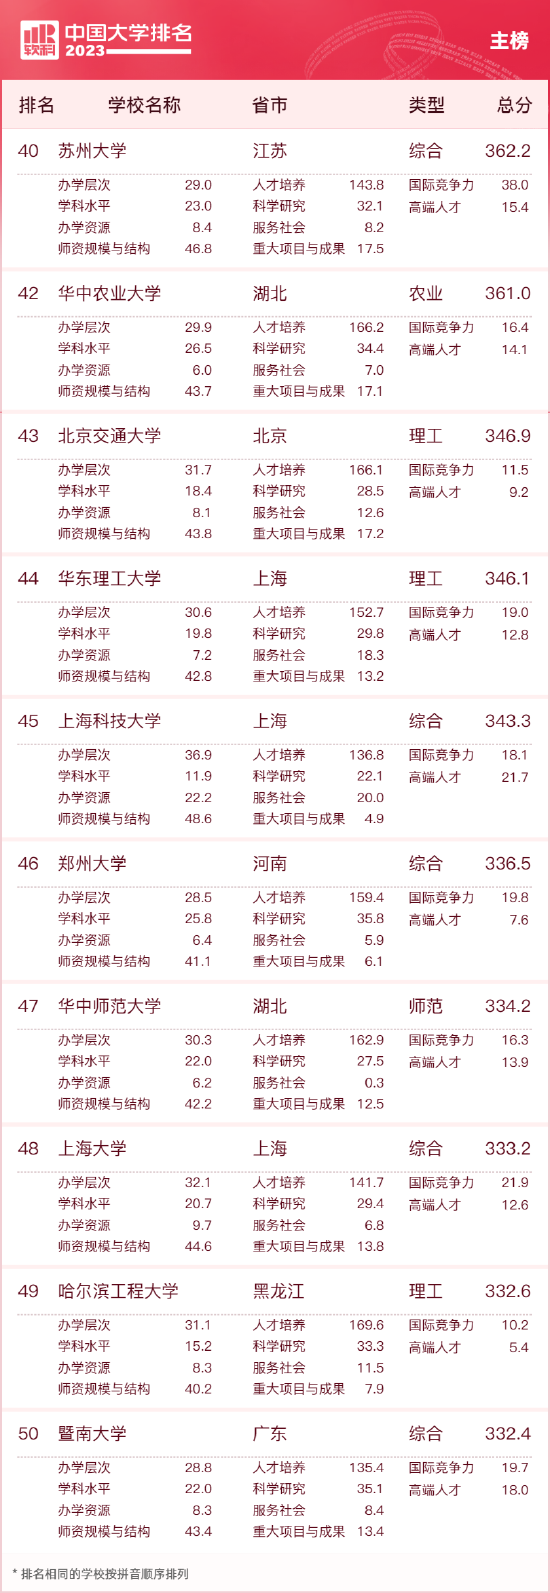 2023中国大学排名公布 清华北大浙大连续9年蝉联三甲 第5张